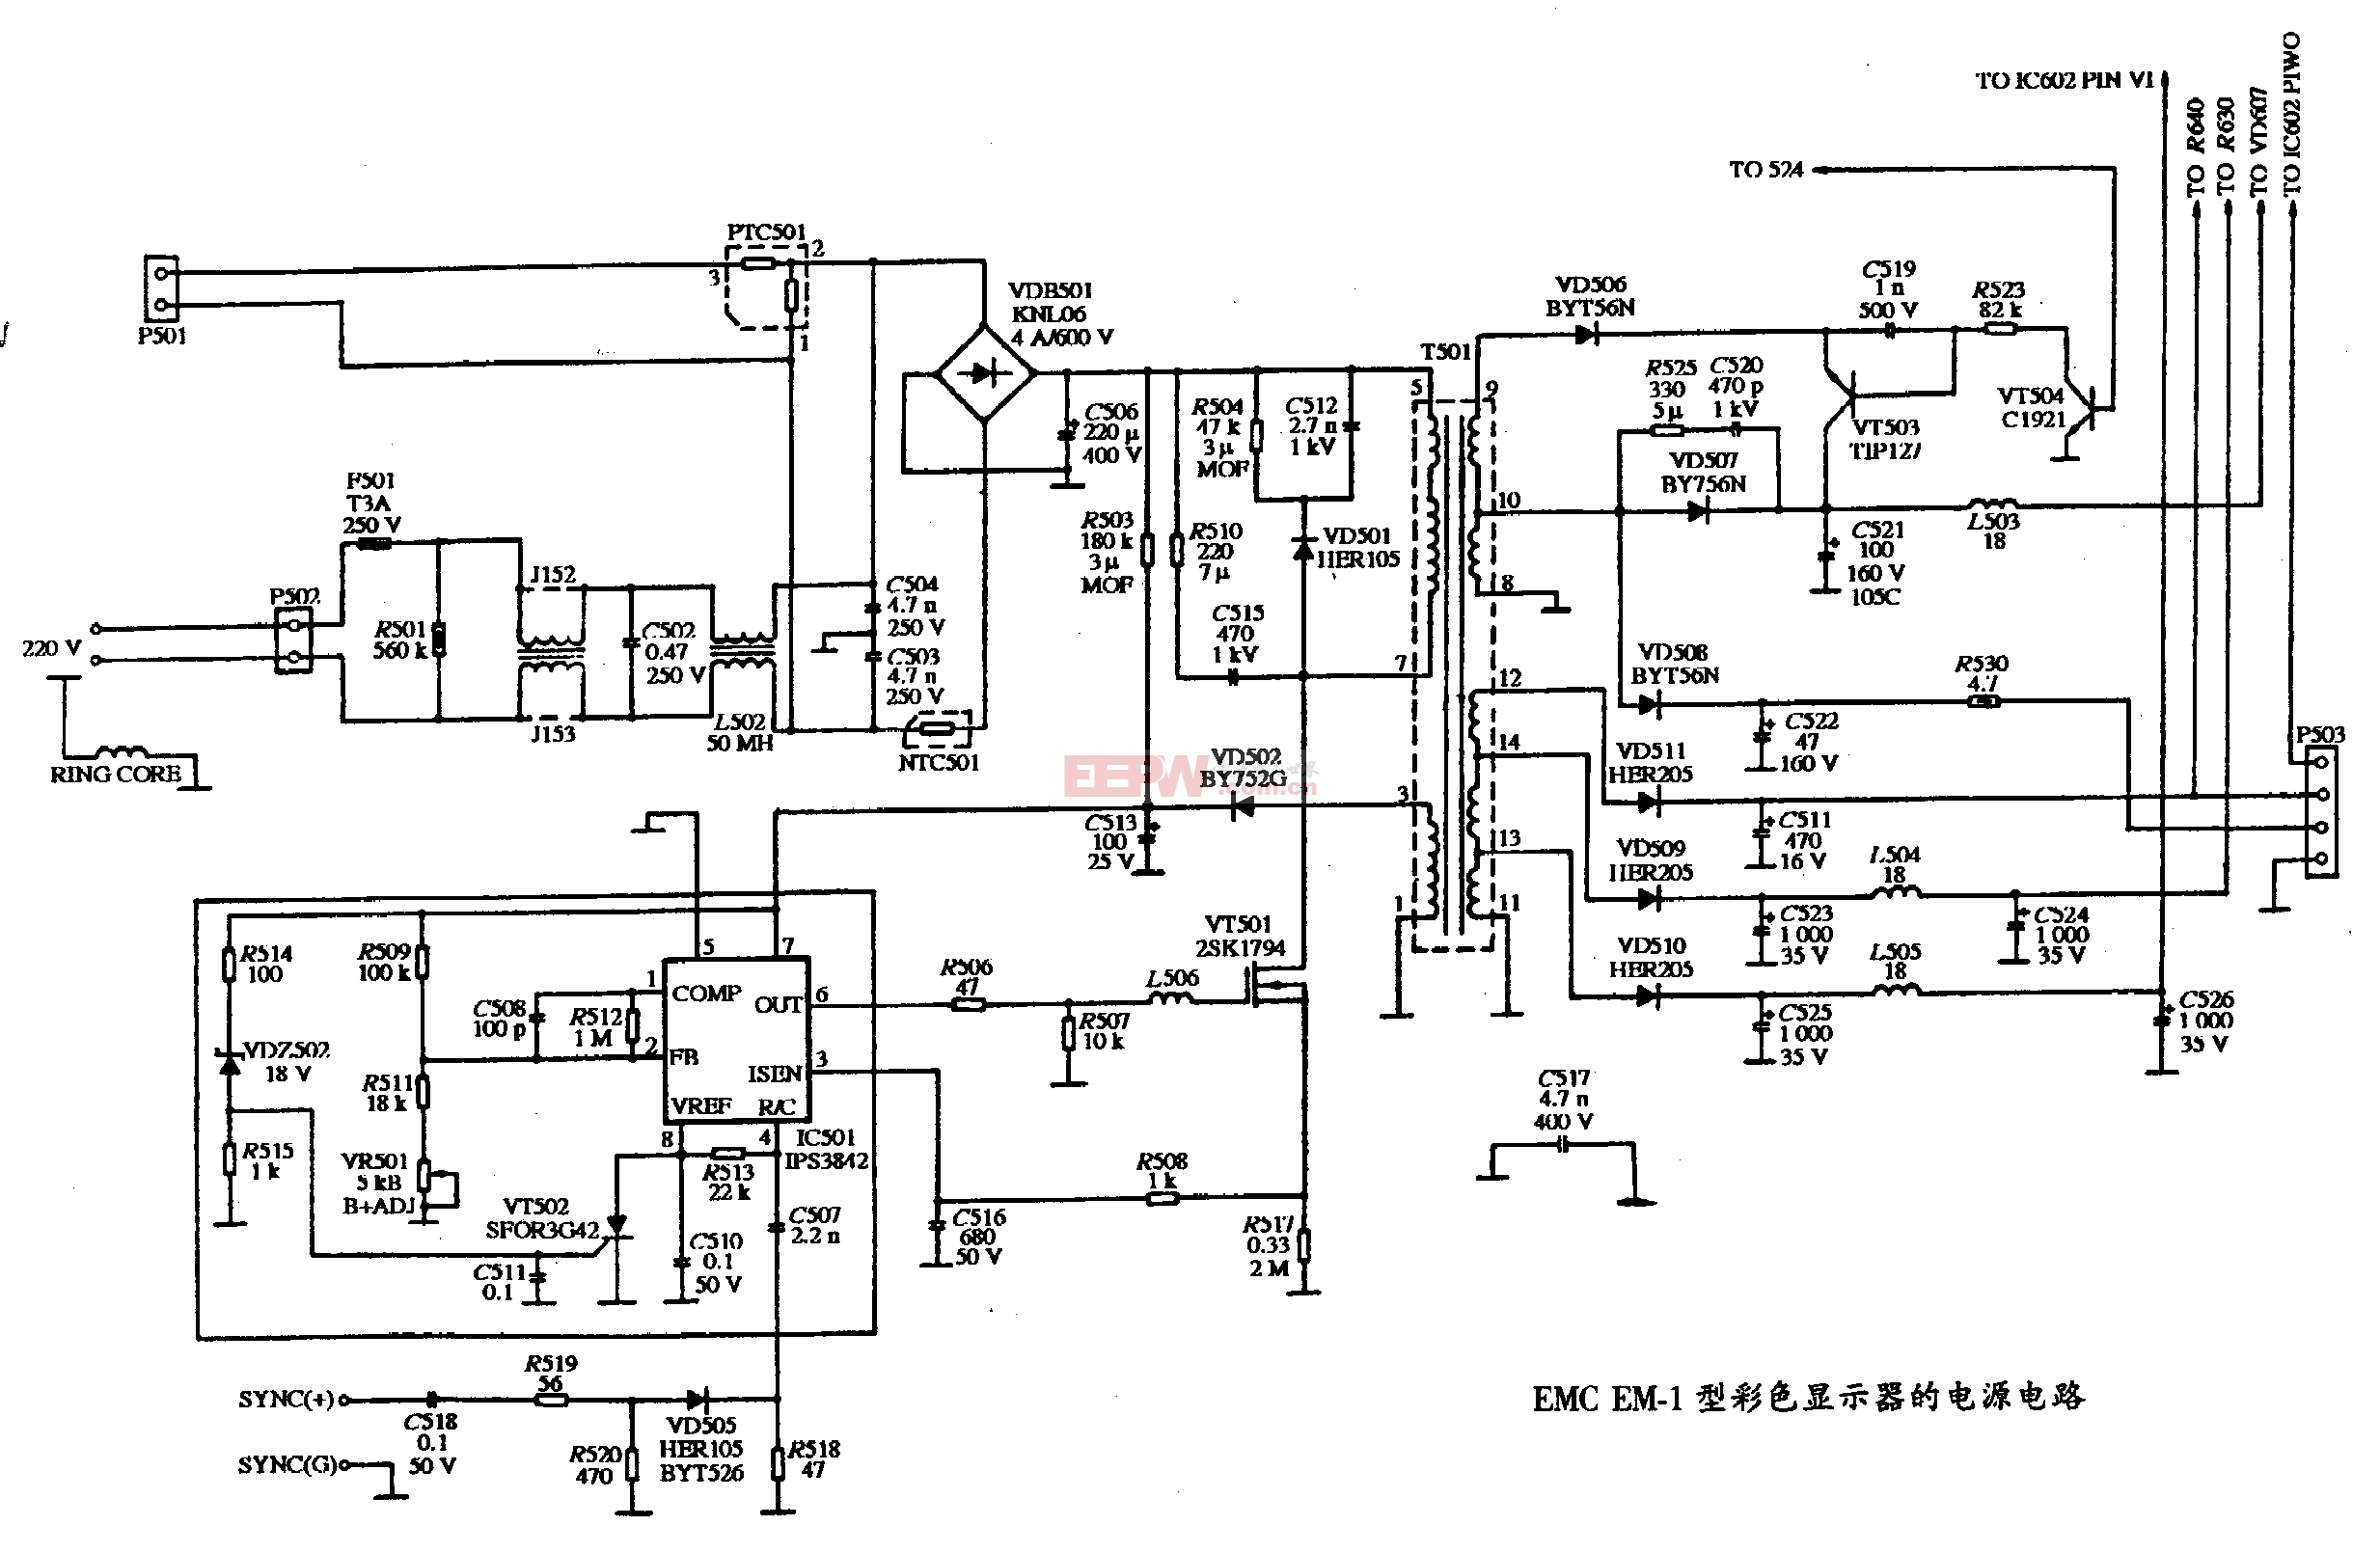 43、EMC EM-1型彩色显示器的电源电路图